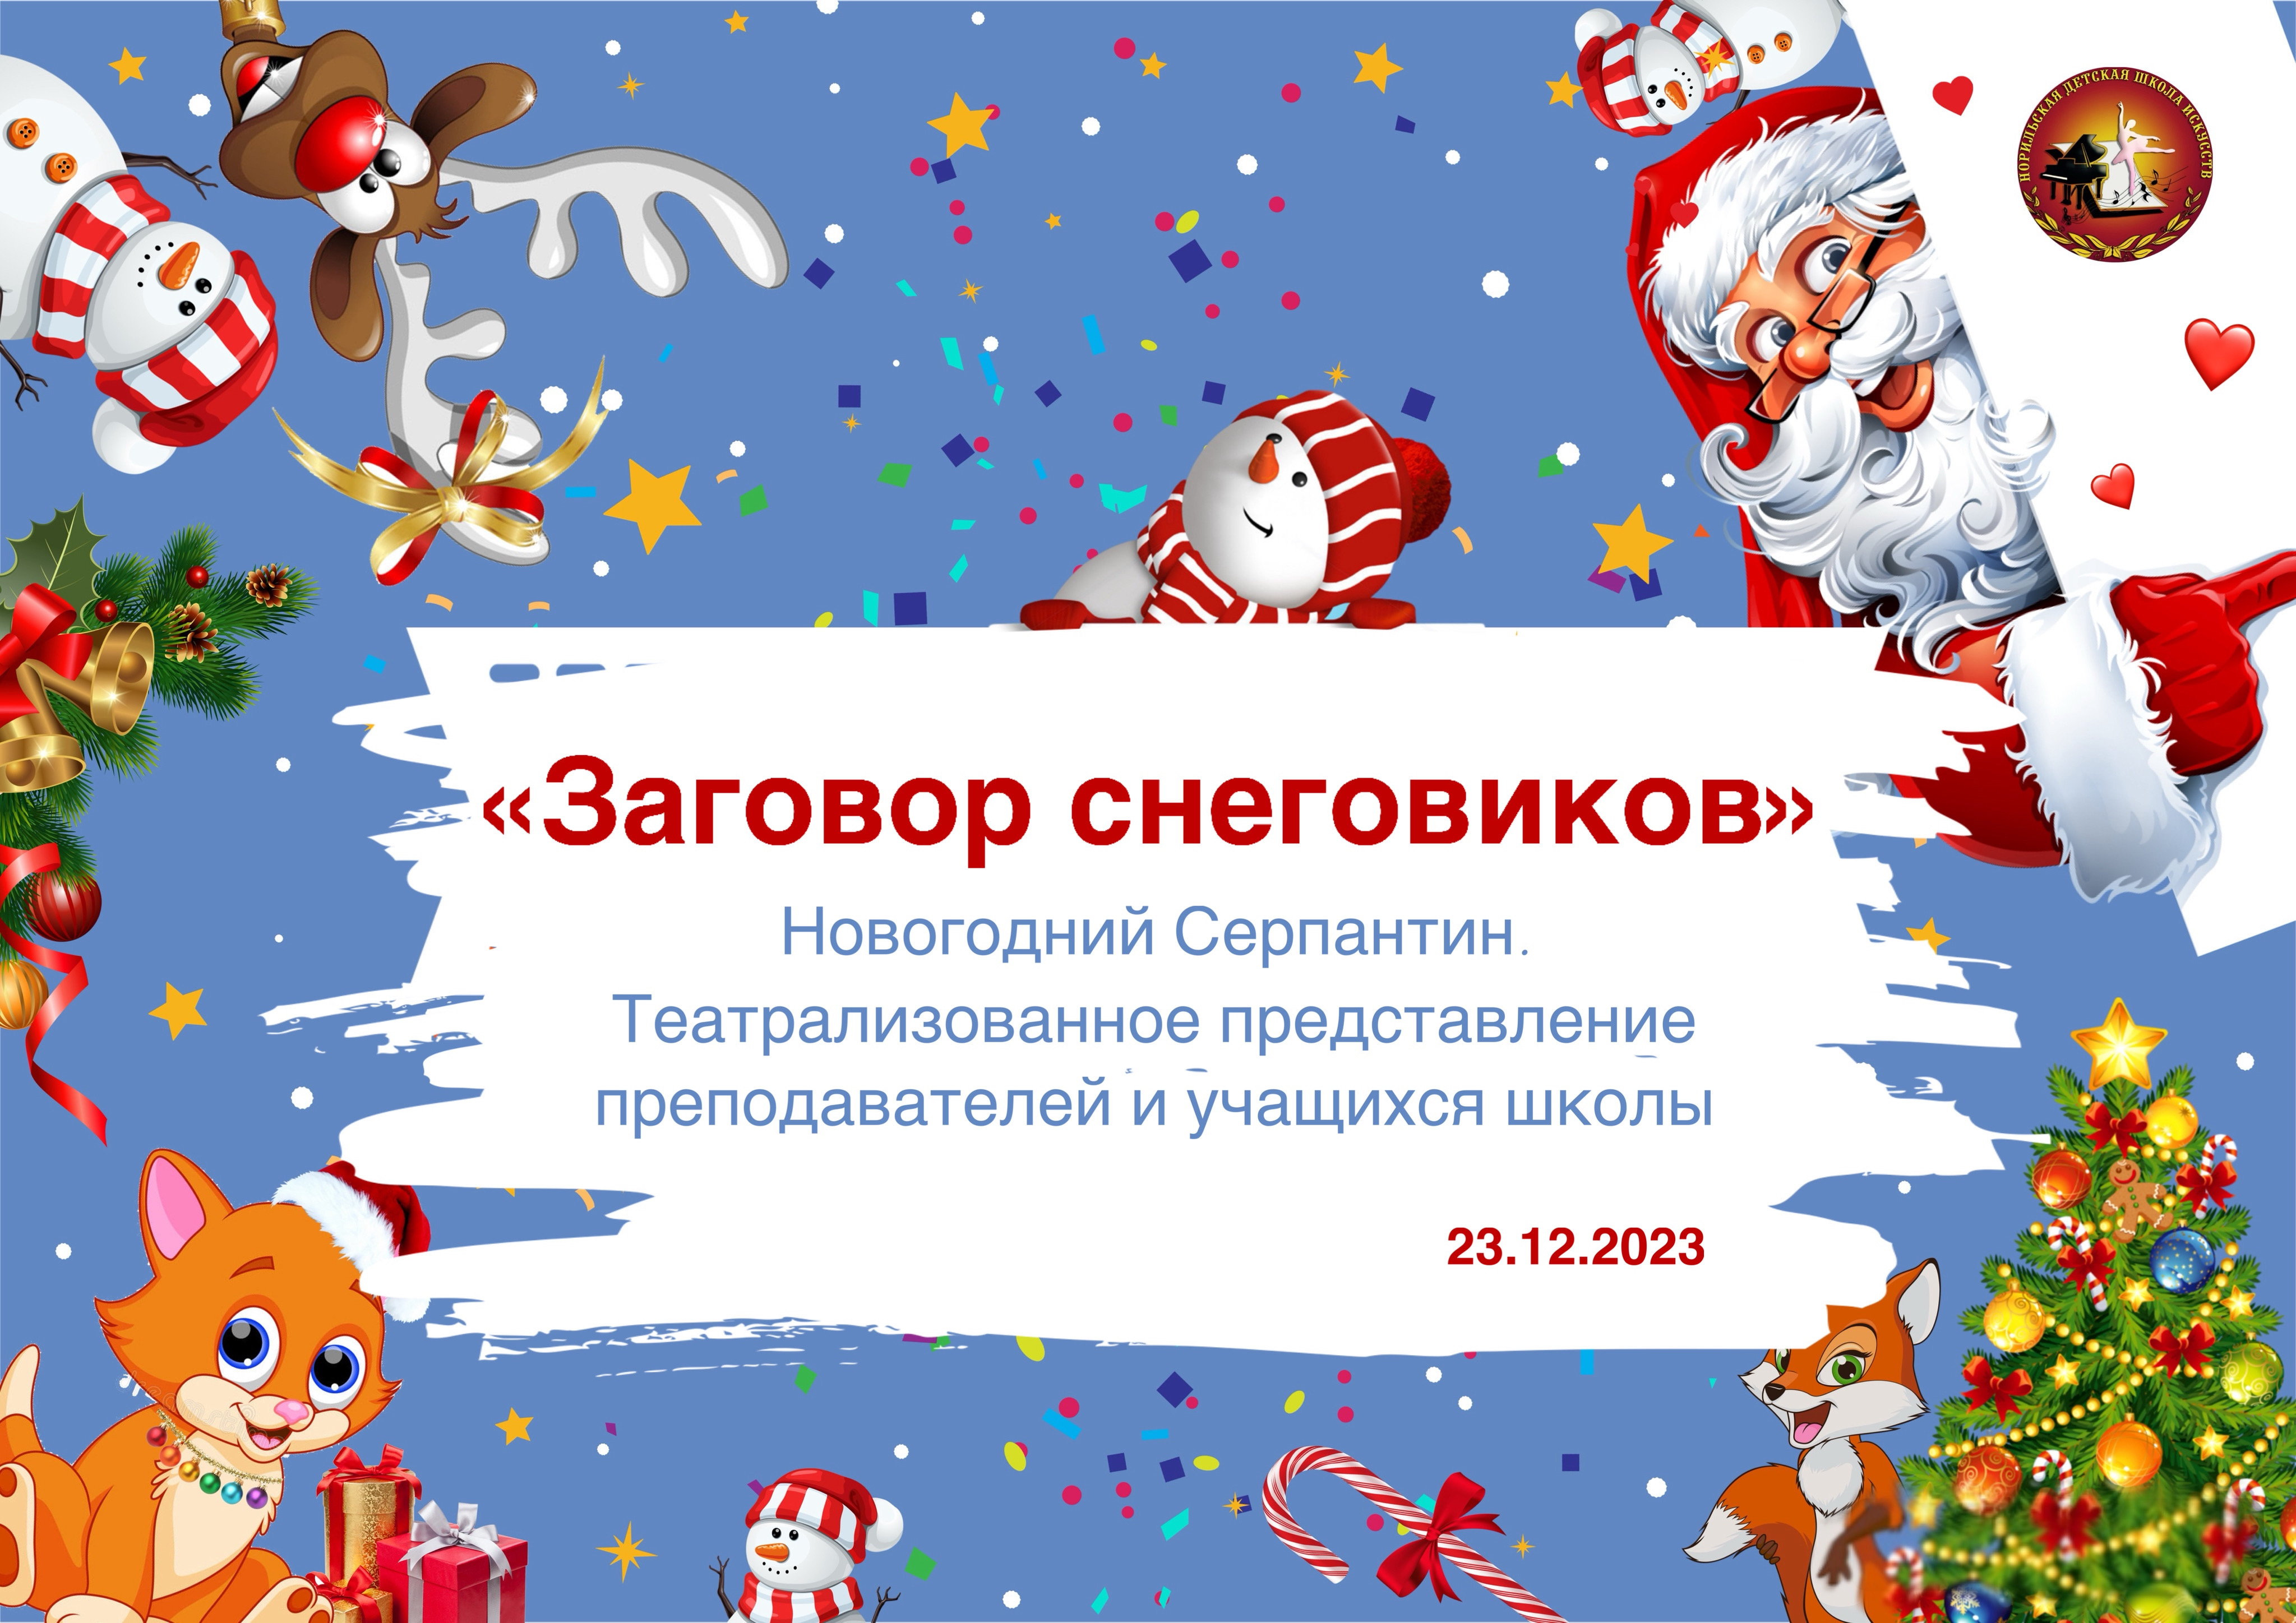 Новогодний серпантин «Заговор снеговиков». Концерт преподавателей и учащихся "НДШИ" 23.12.2023